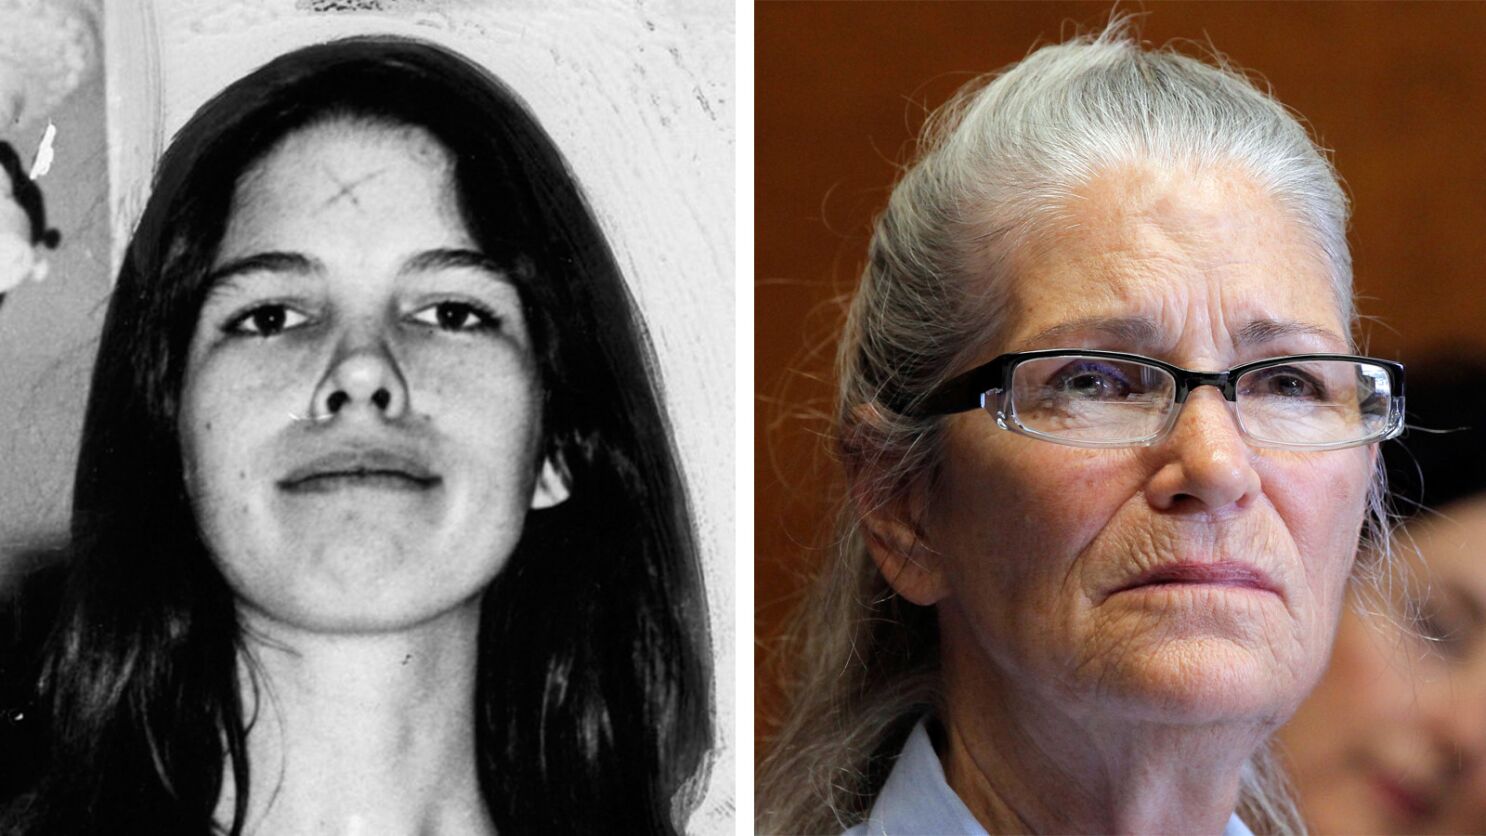 Onleesbaar onderpand landheer Leslie Van Houten stabbed Rosemary LaBianca 14 times. Will Manson follower  go free? - Los Angeles Times